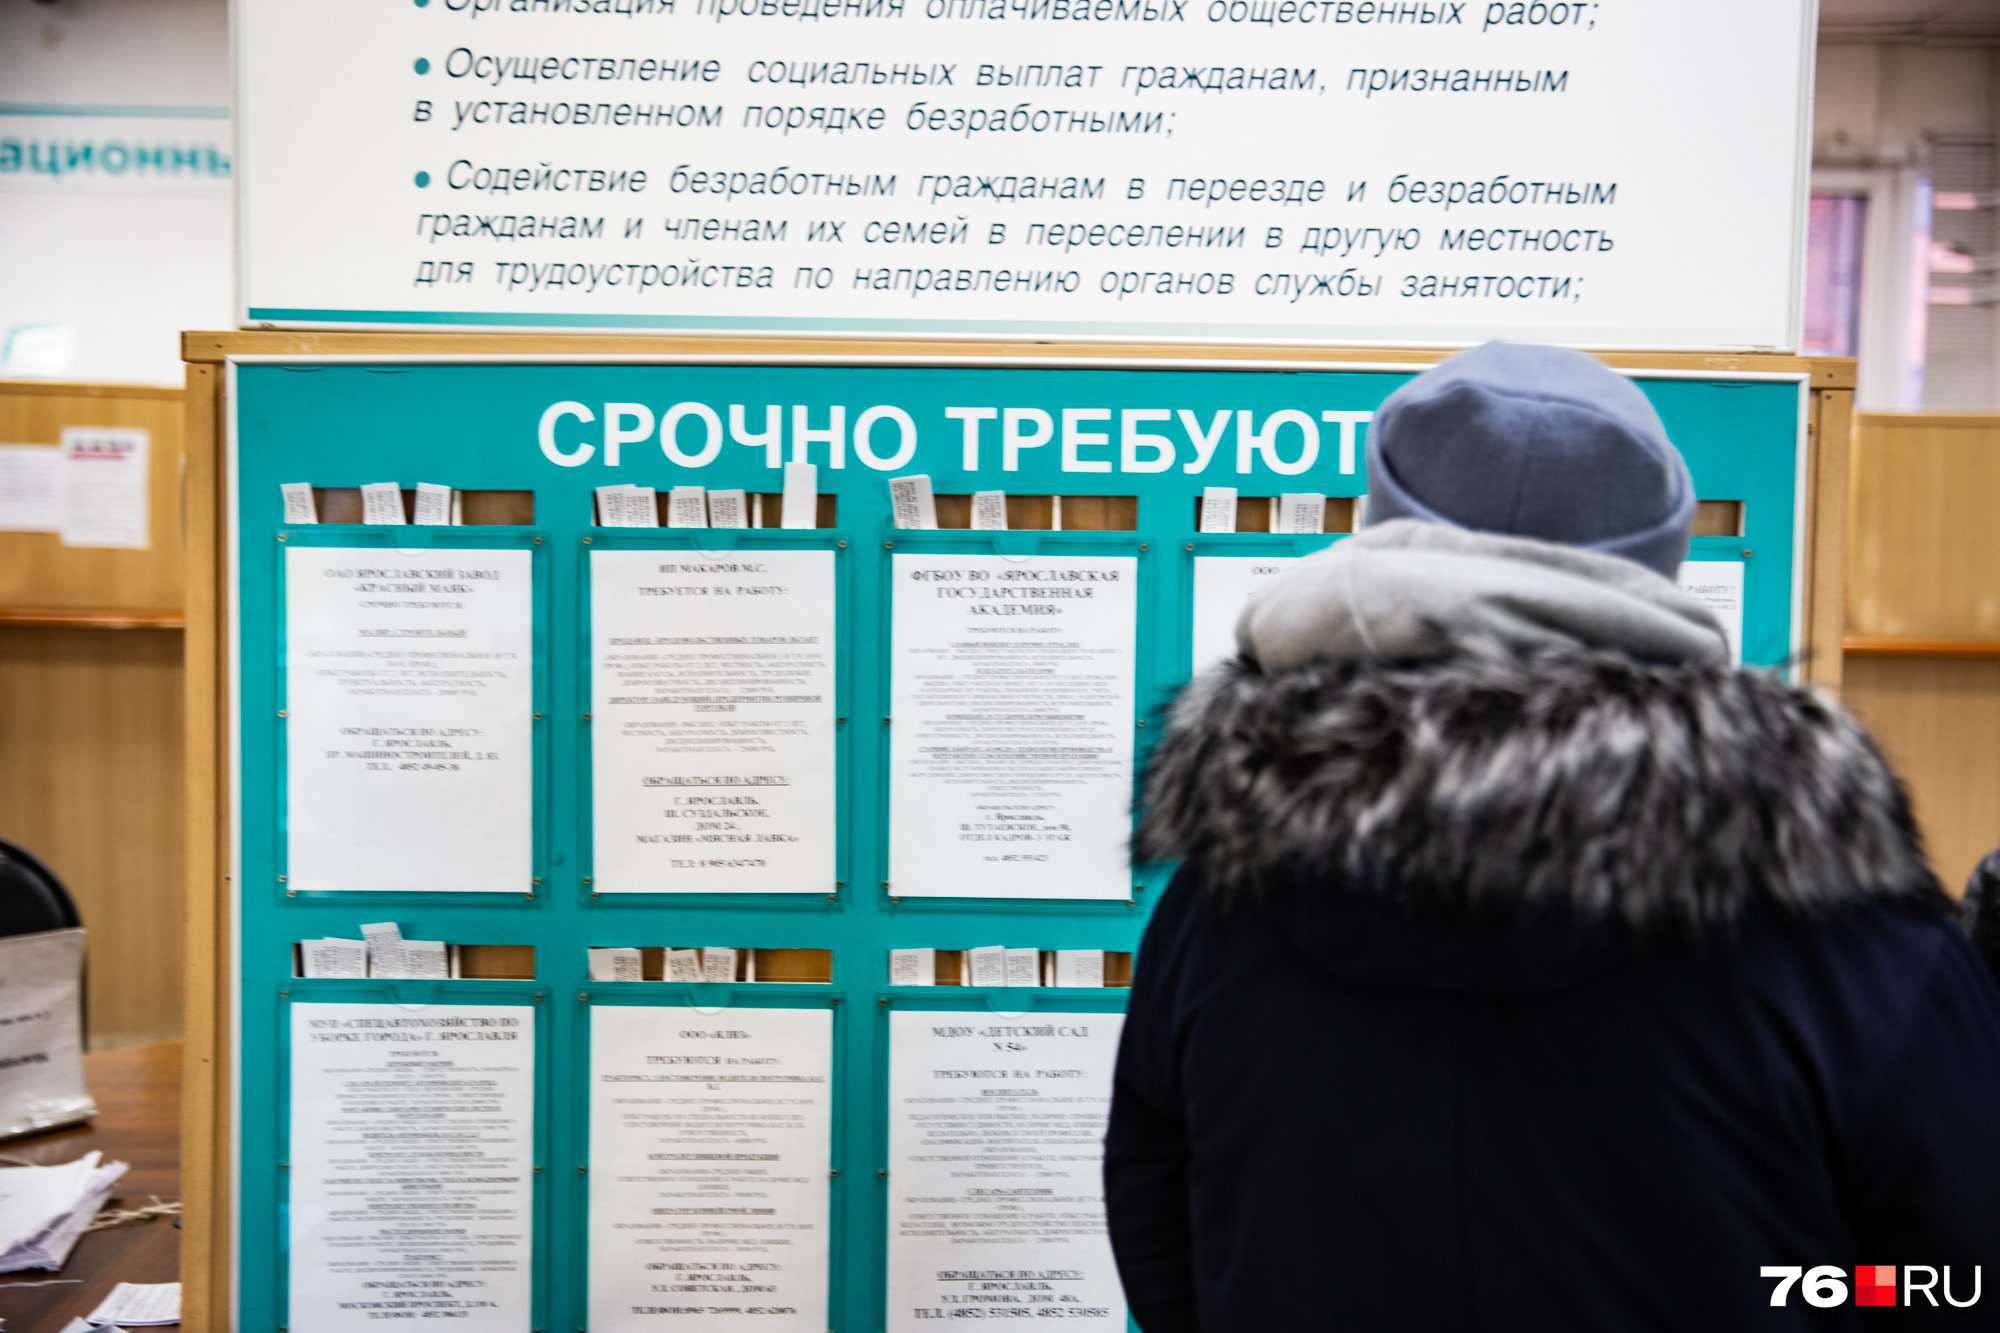 Ярославцы хотят работу с зарплатой от 20 тысяч рублей